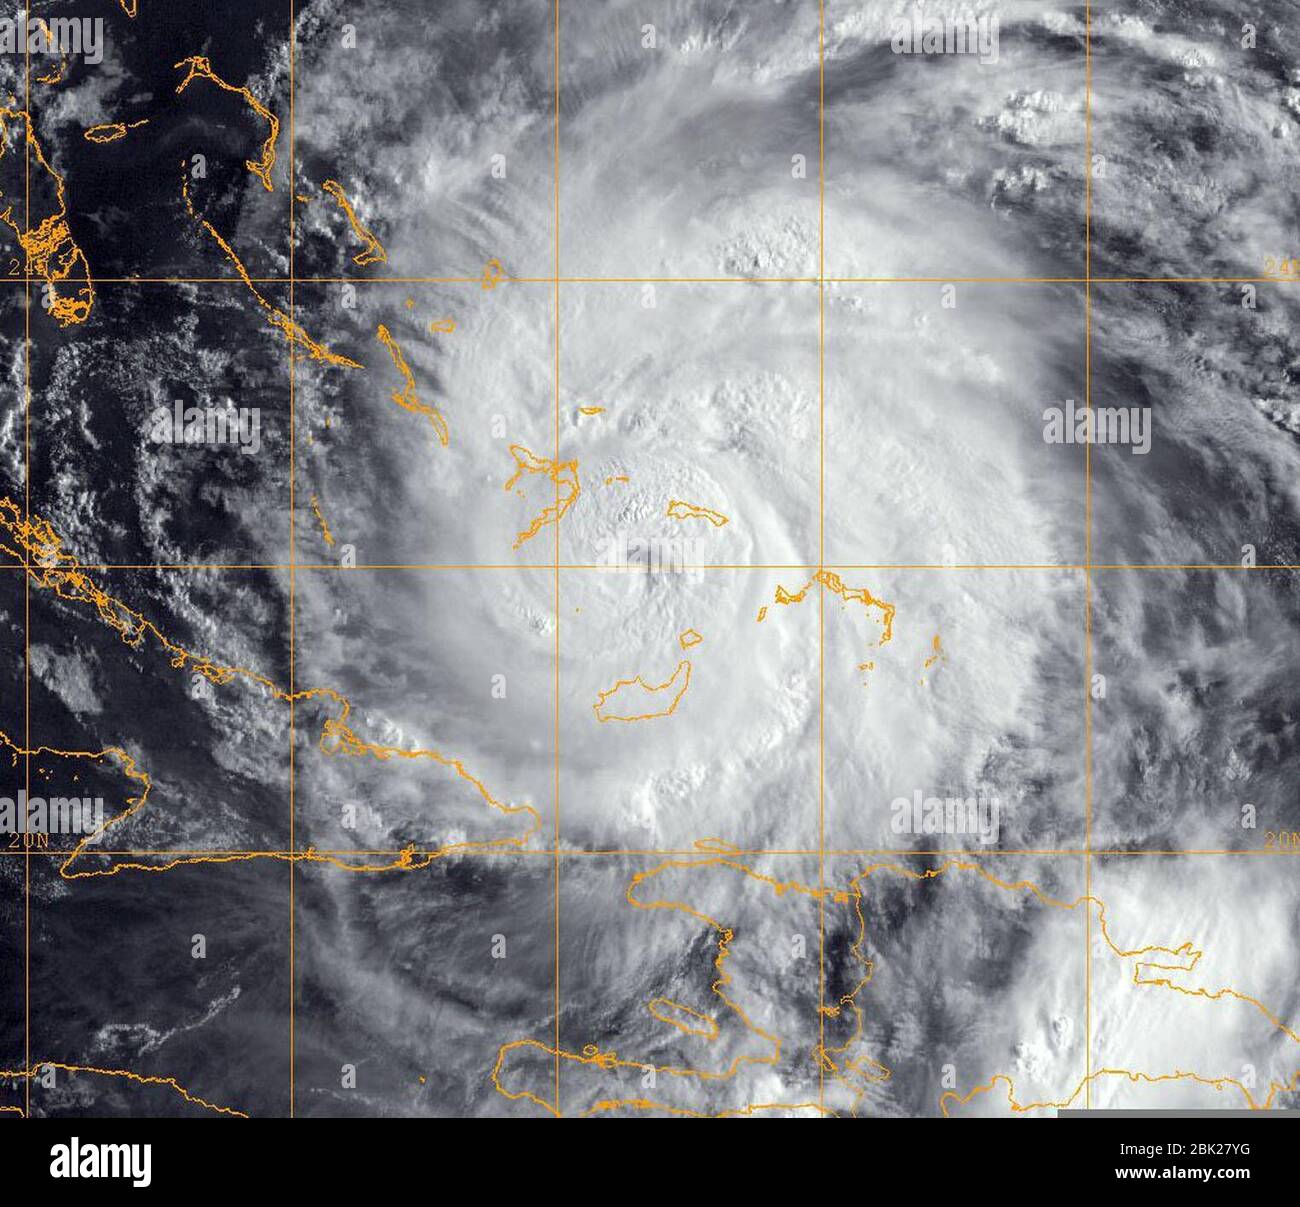 Hurrikan Irene (2011) - Satellitenbild 2011-08-24. Stockfoto